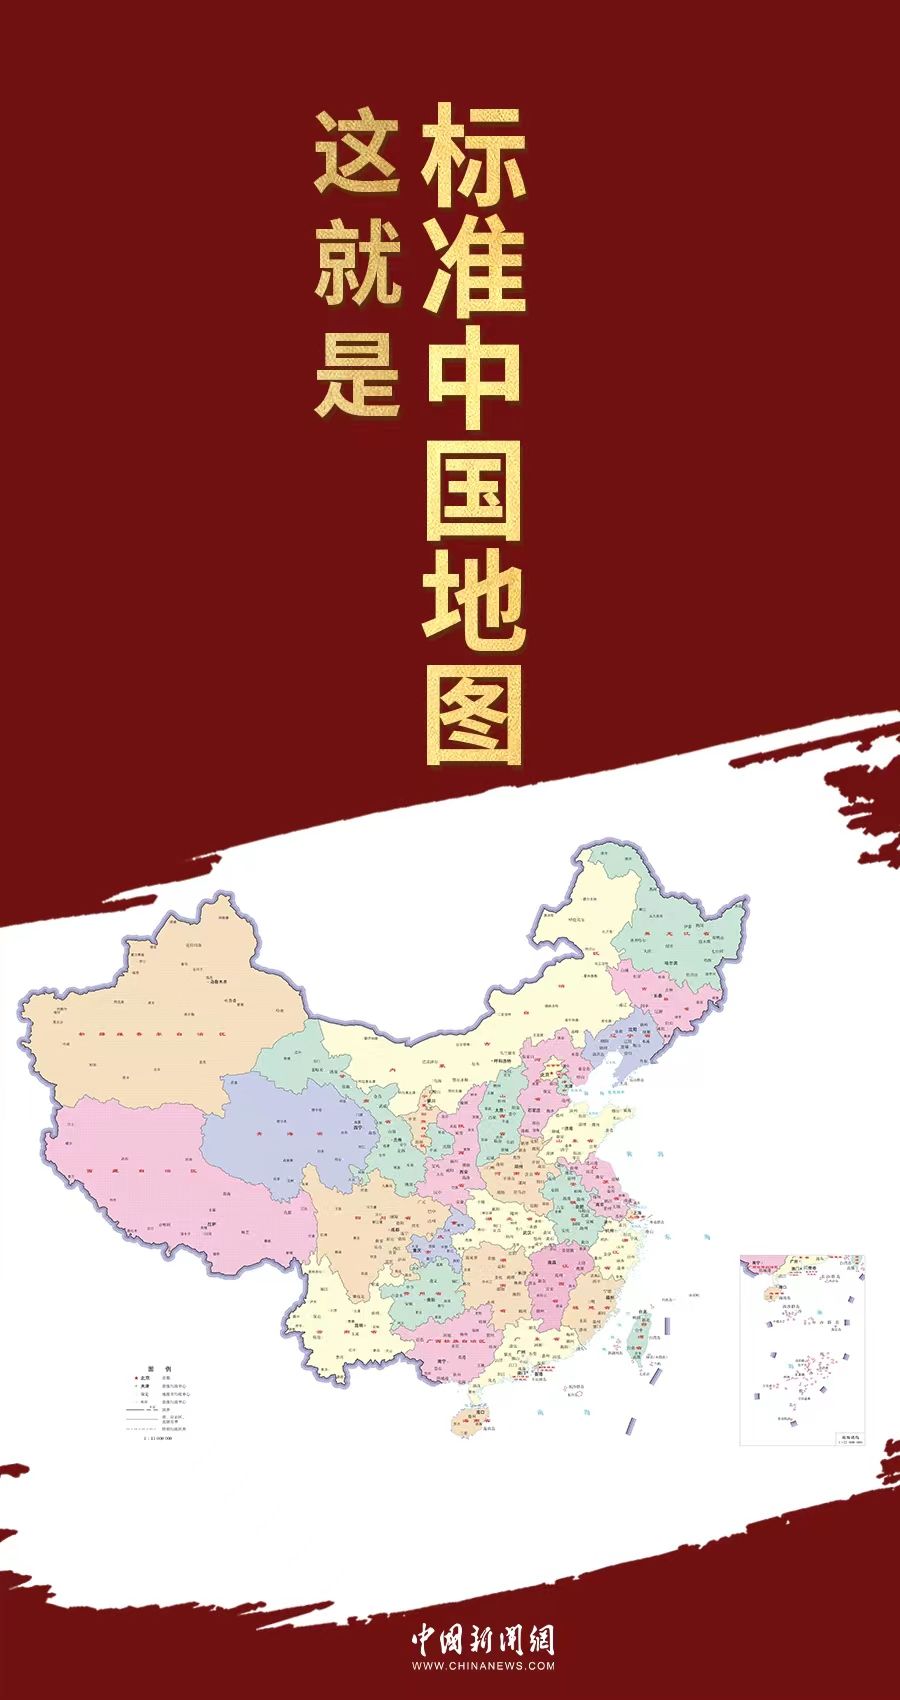 这就是标准中国地图